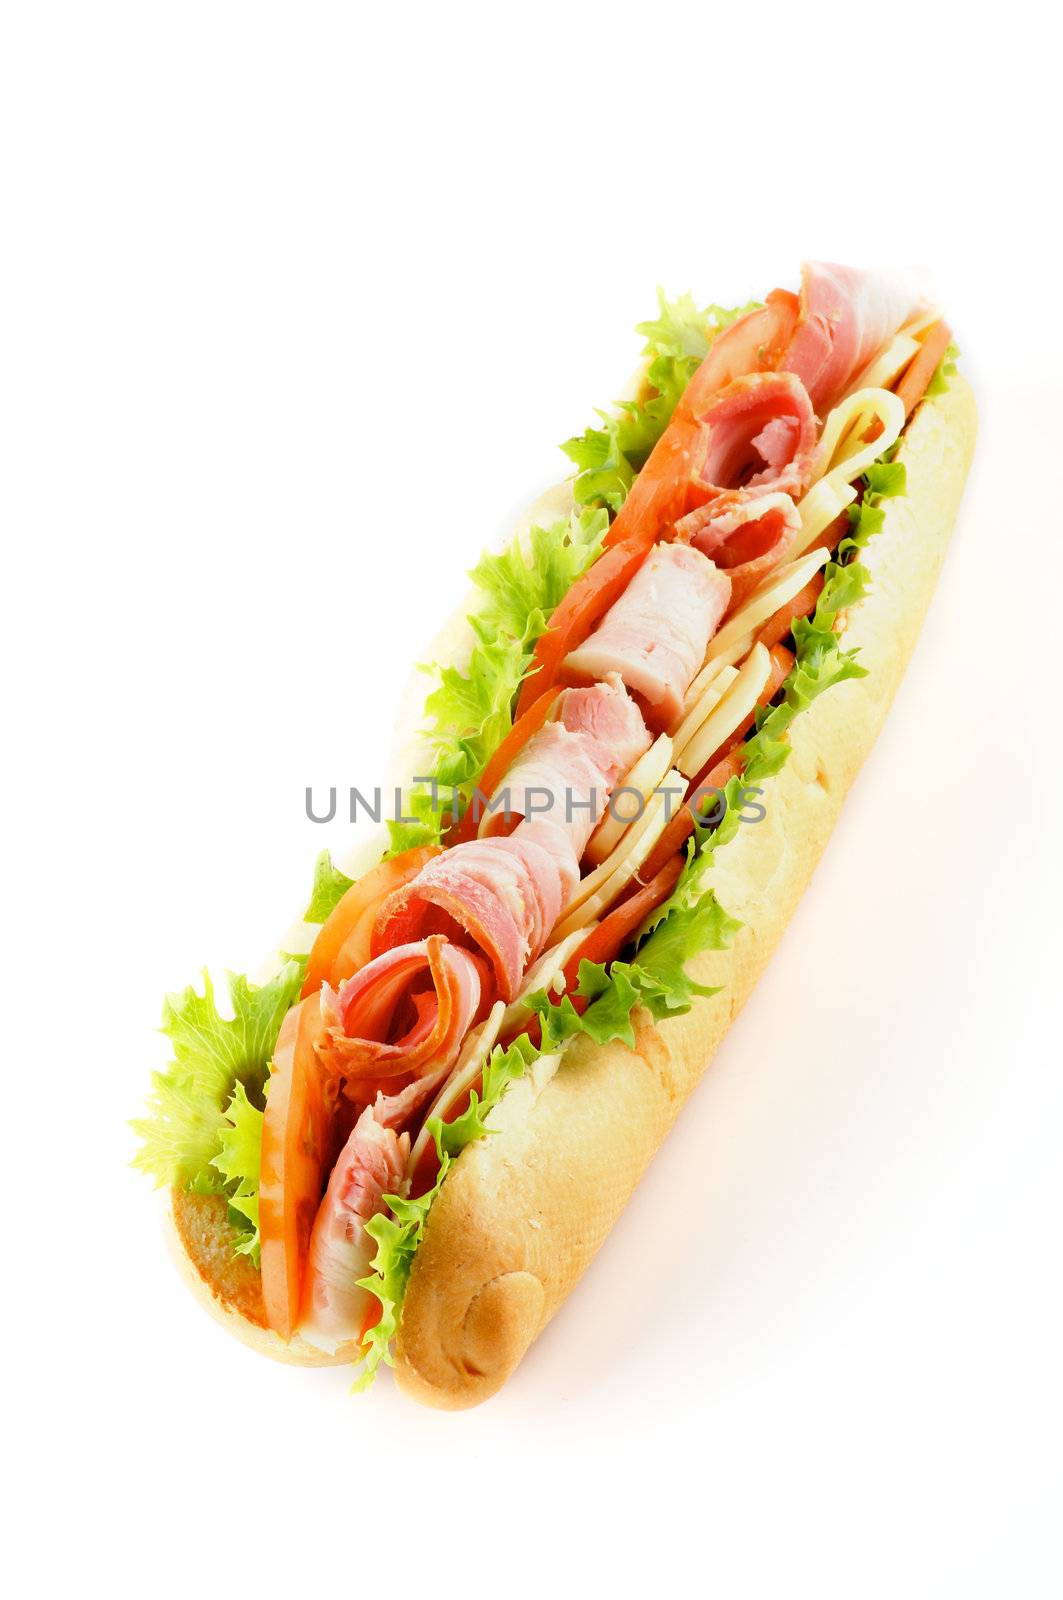 Long Baguette Sandwich by zhekos